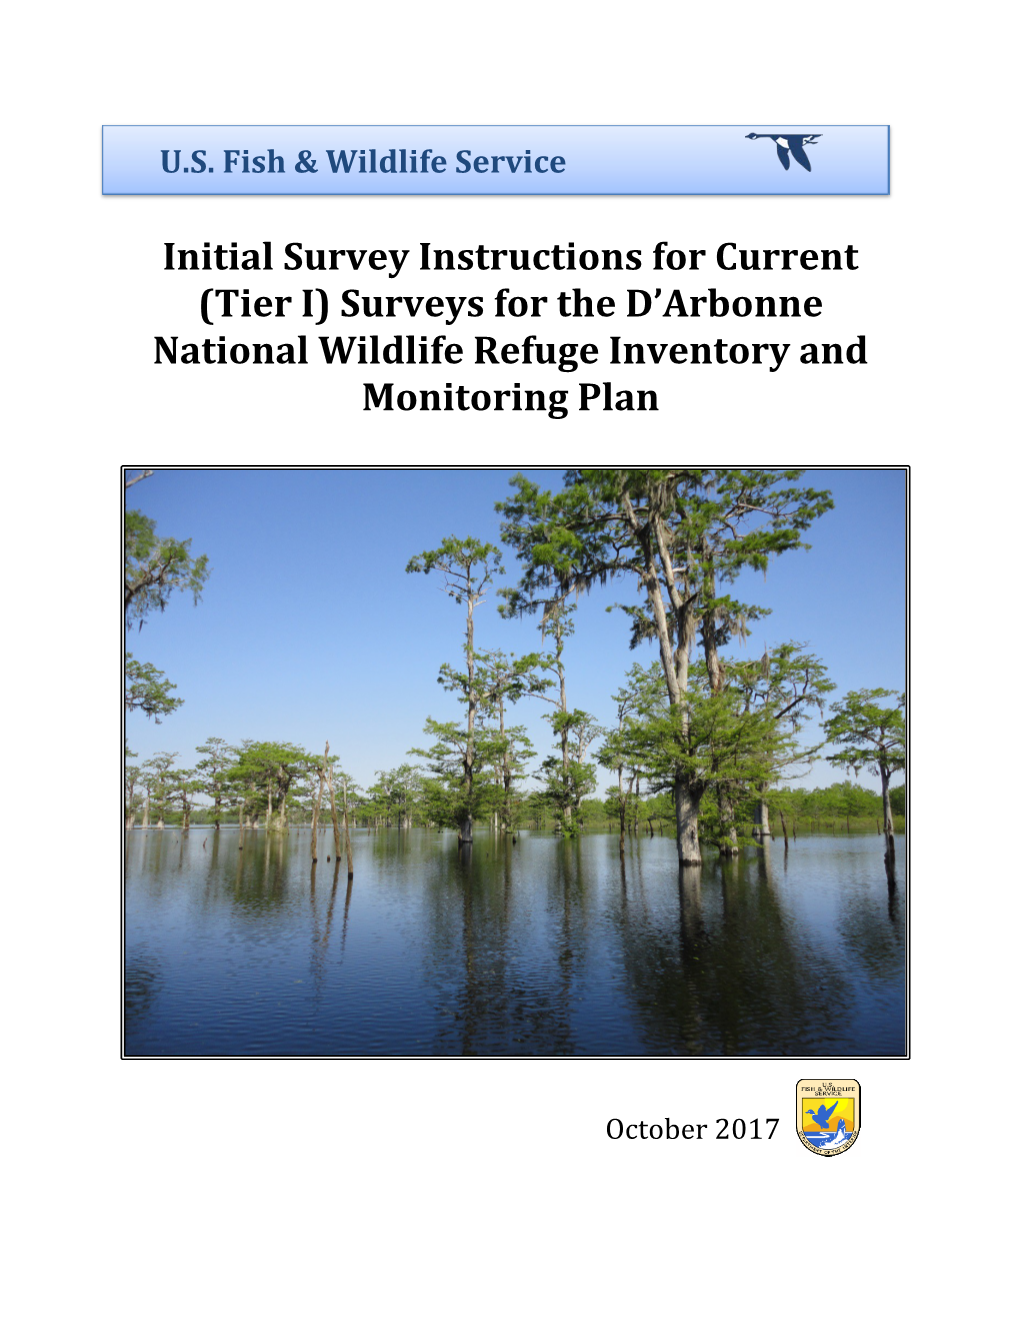 Surveys for the D'arbonne National Wildlife Refuge Inventory